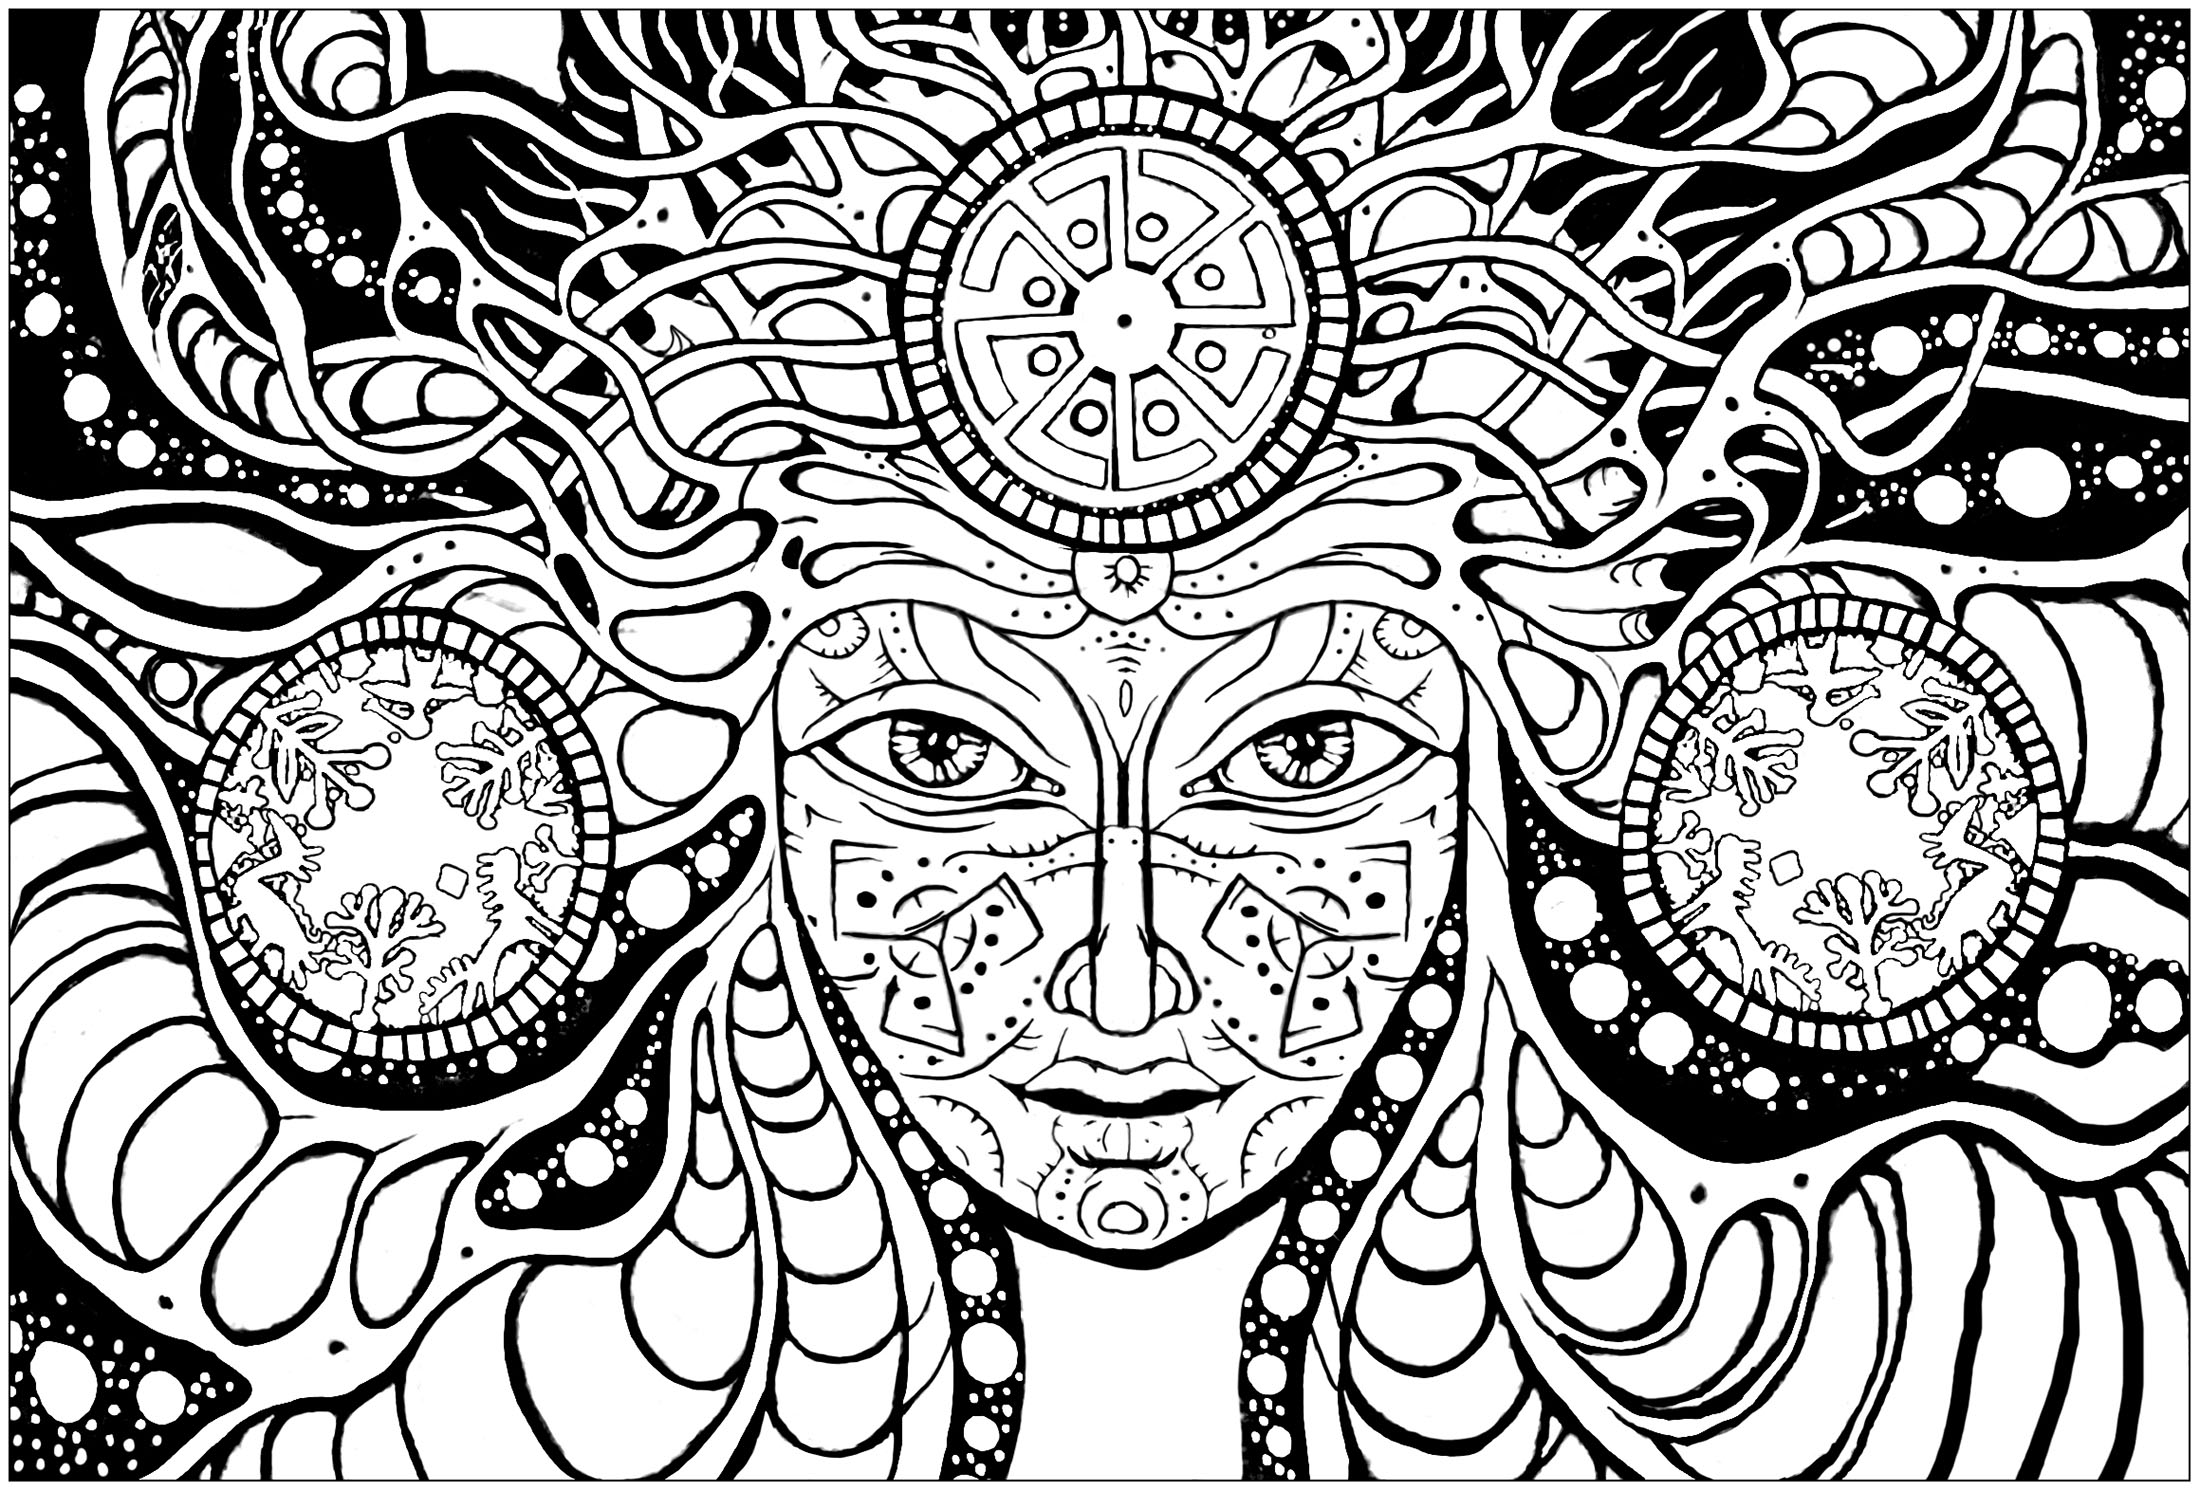 Donna psichedelica: colorate il suo volto ammaliante e gli strani disegni che la circondano